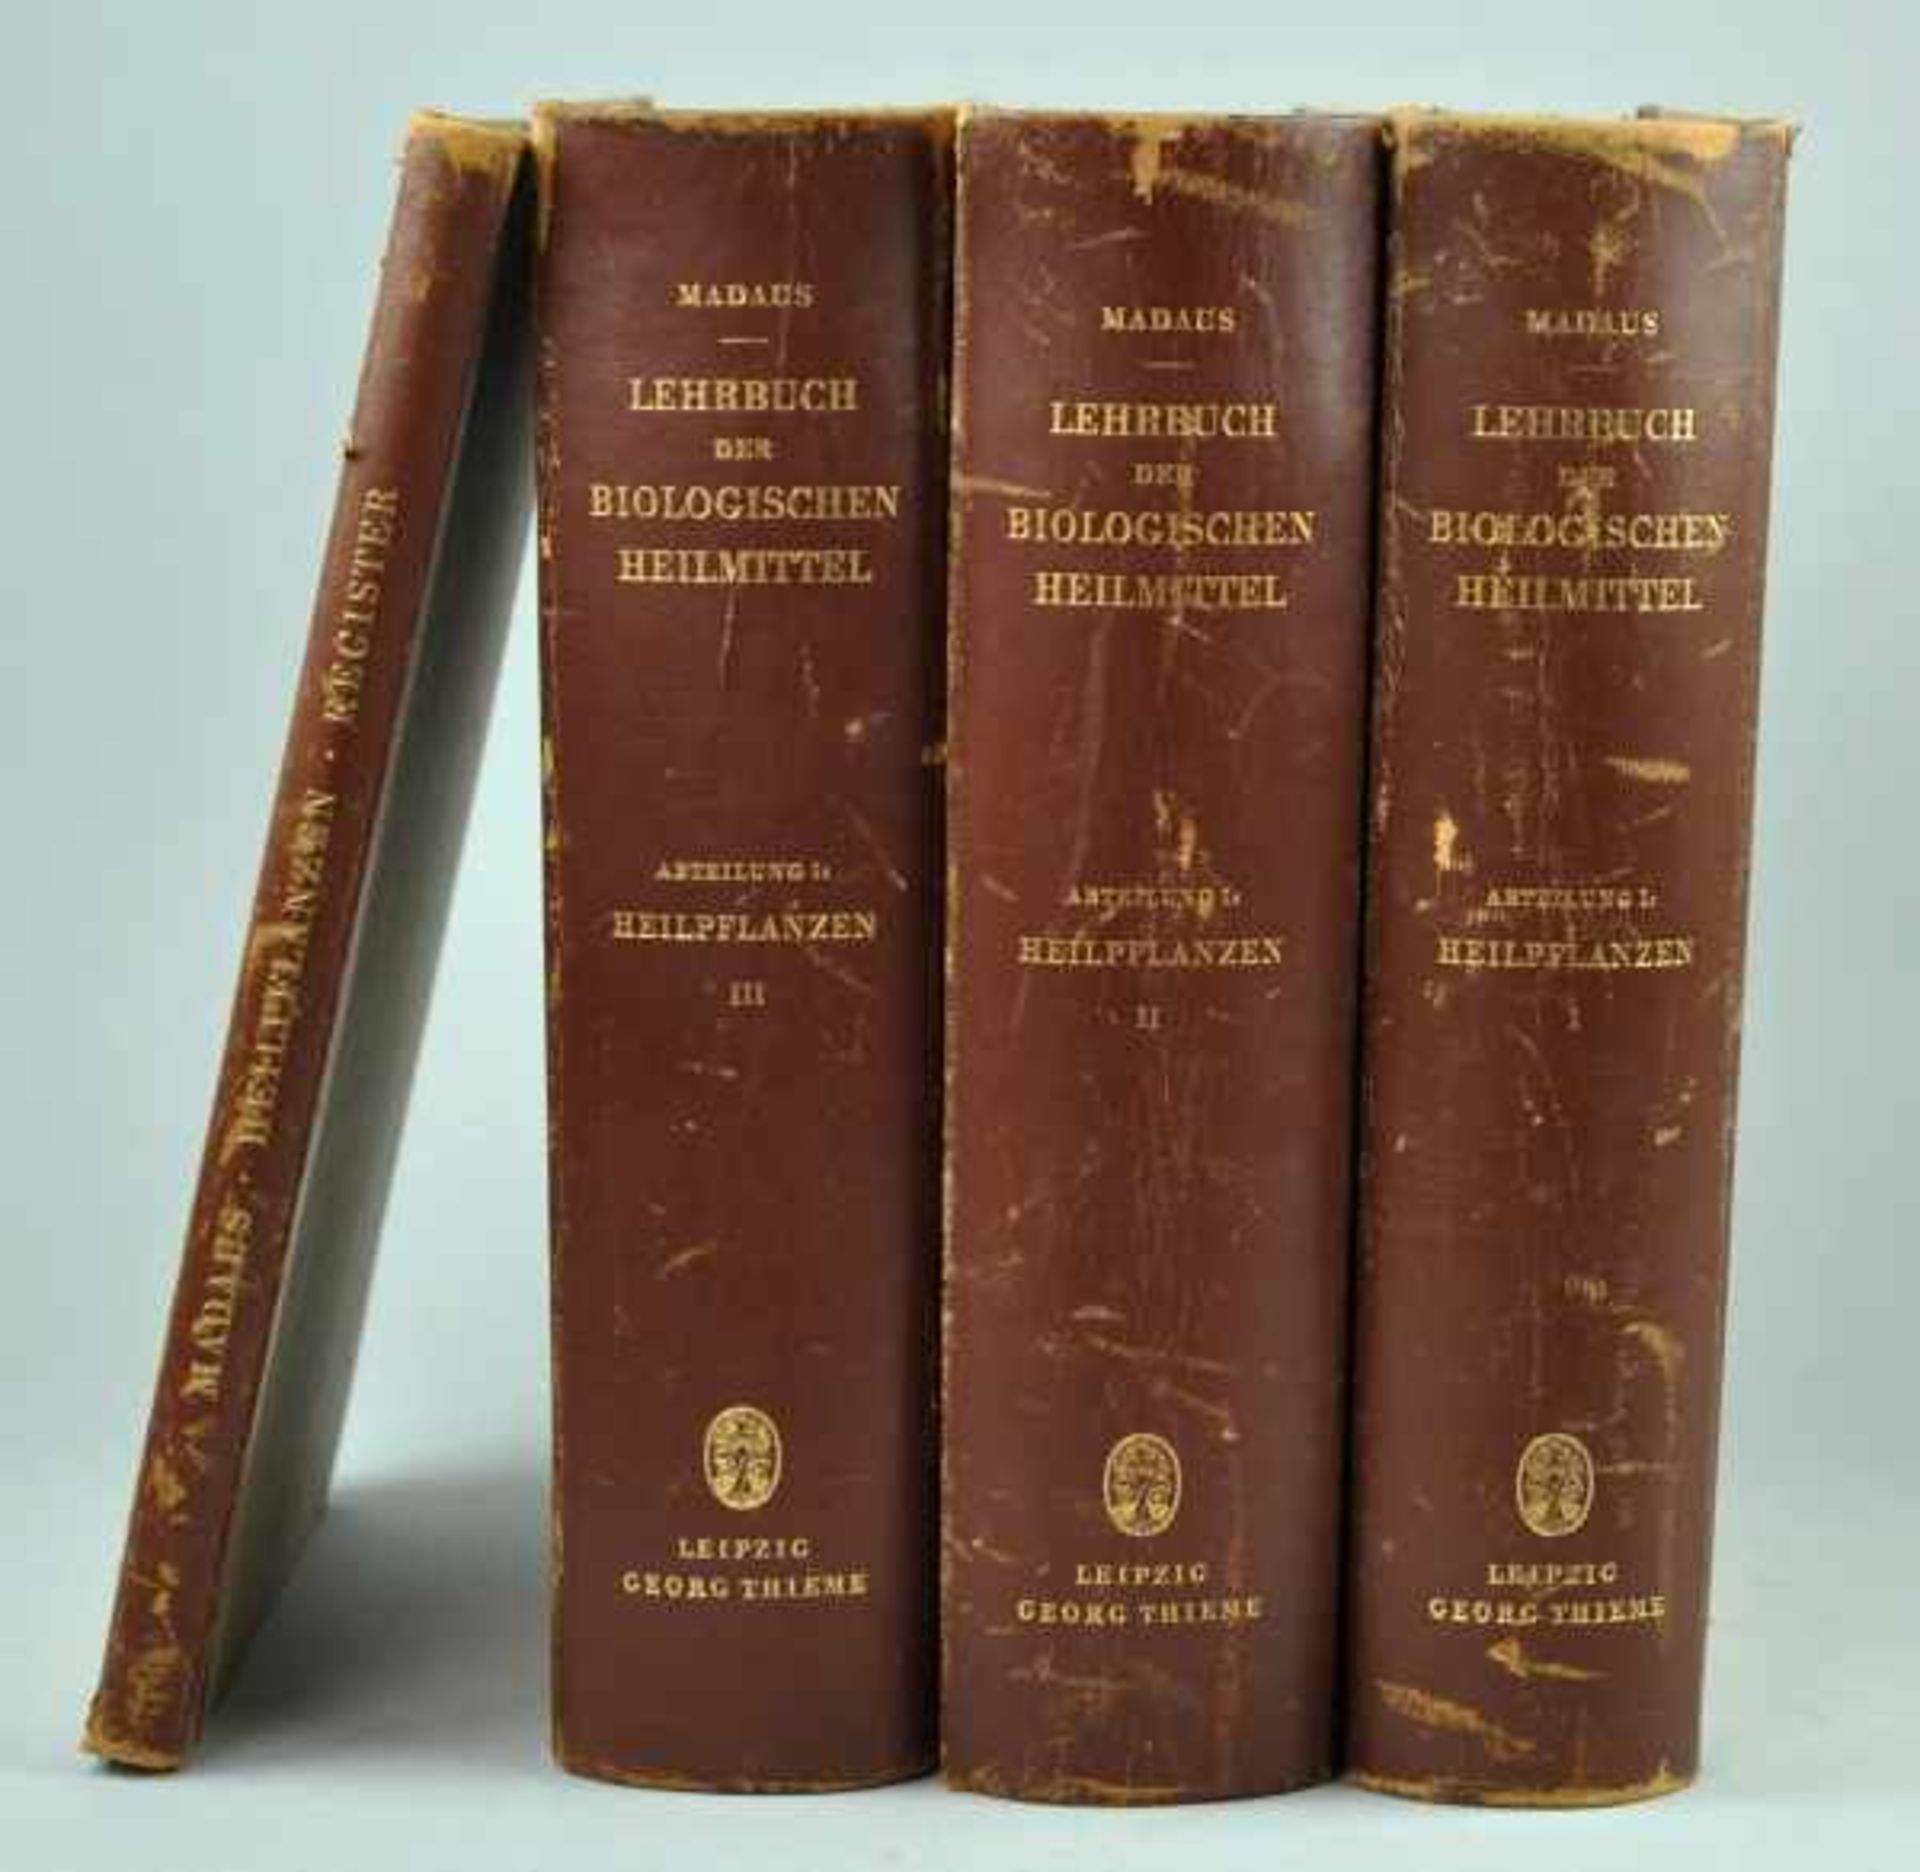 HEILMITTEL Madaus, Gerhard: "Lehrbuch der biologischen Heilmittel", in 3 Bänden plus Registerband,